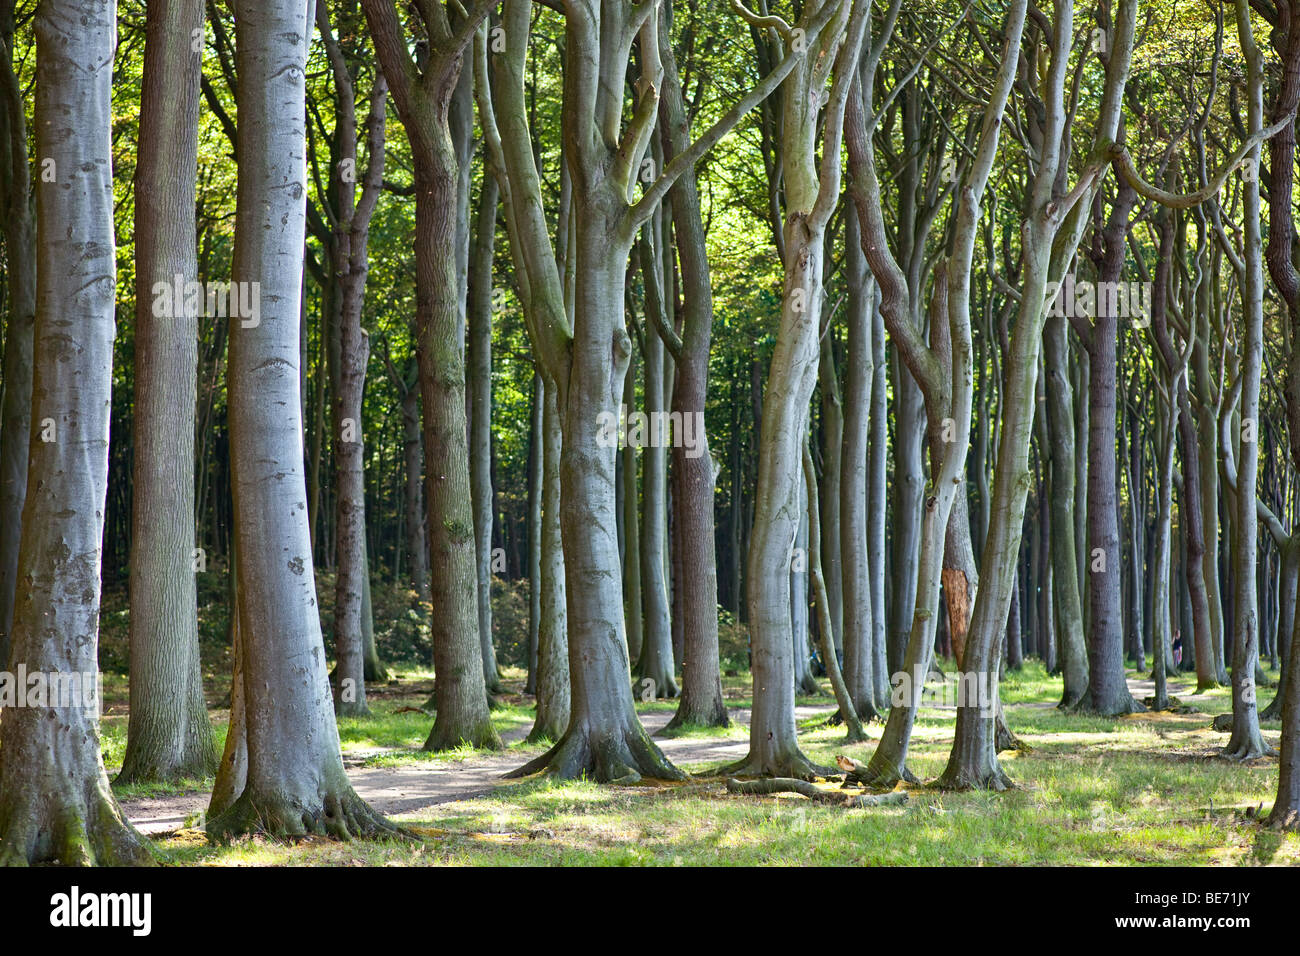 Beech forest in Nienhagen, Germany Stock Photo